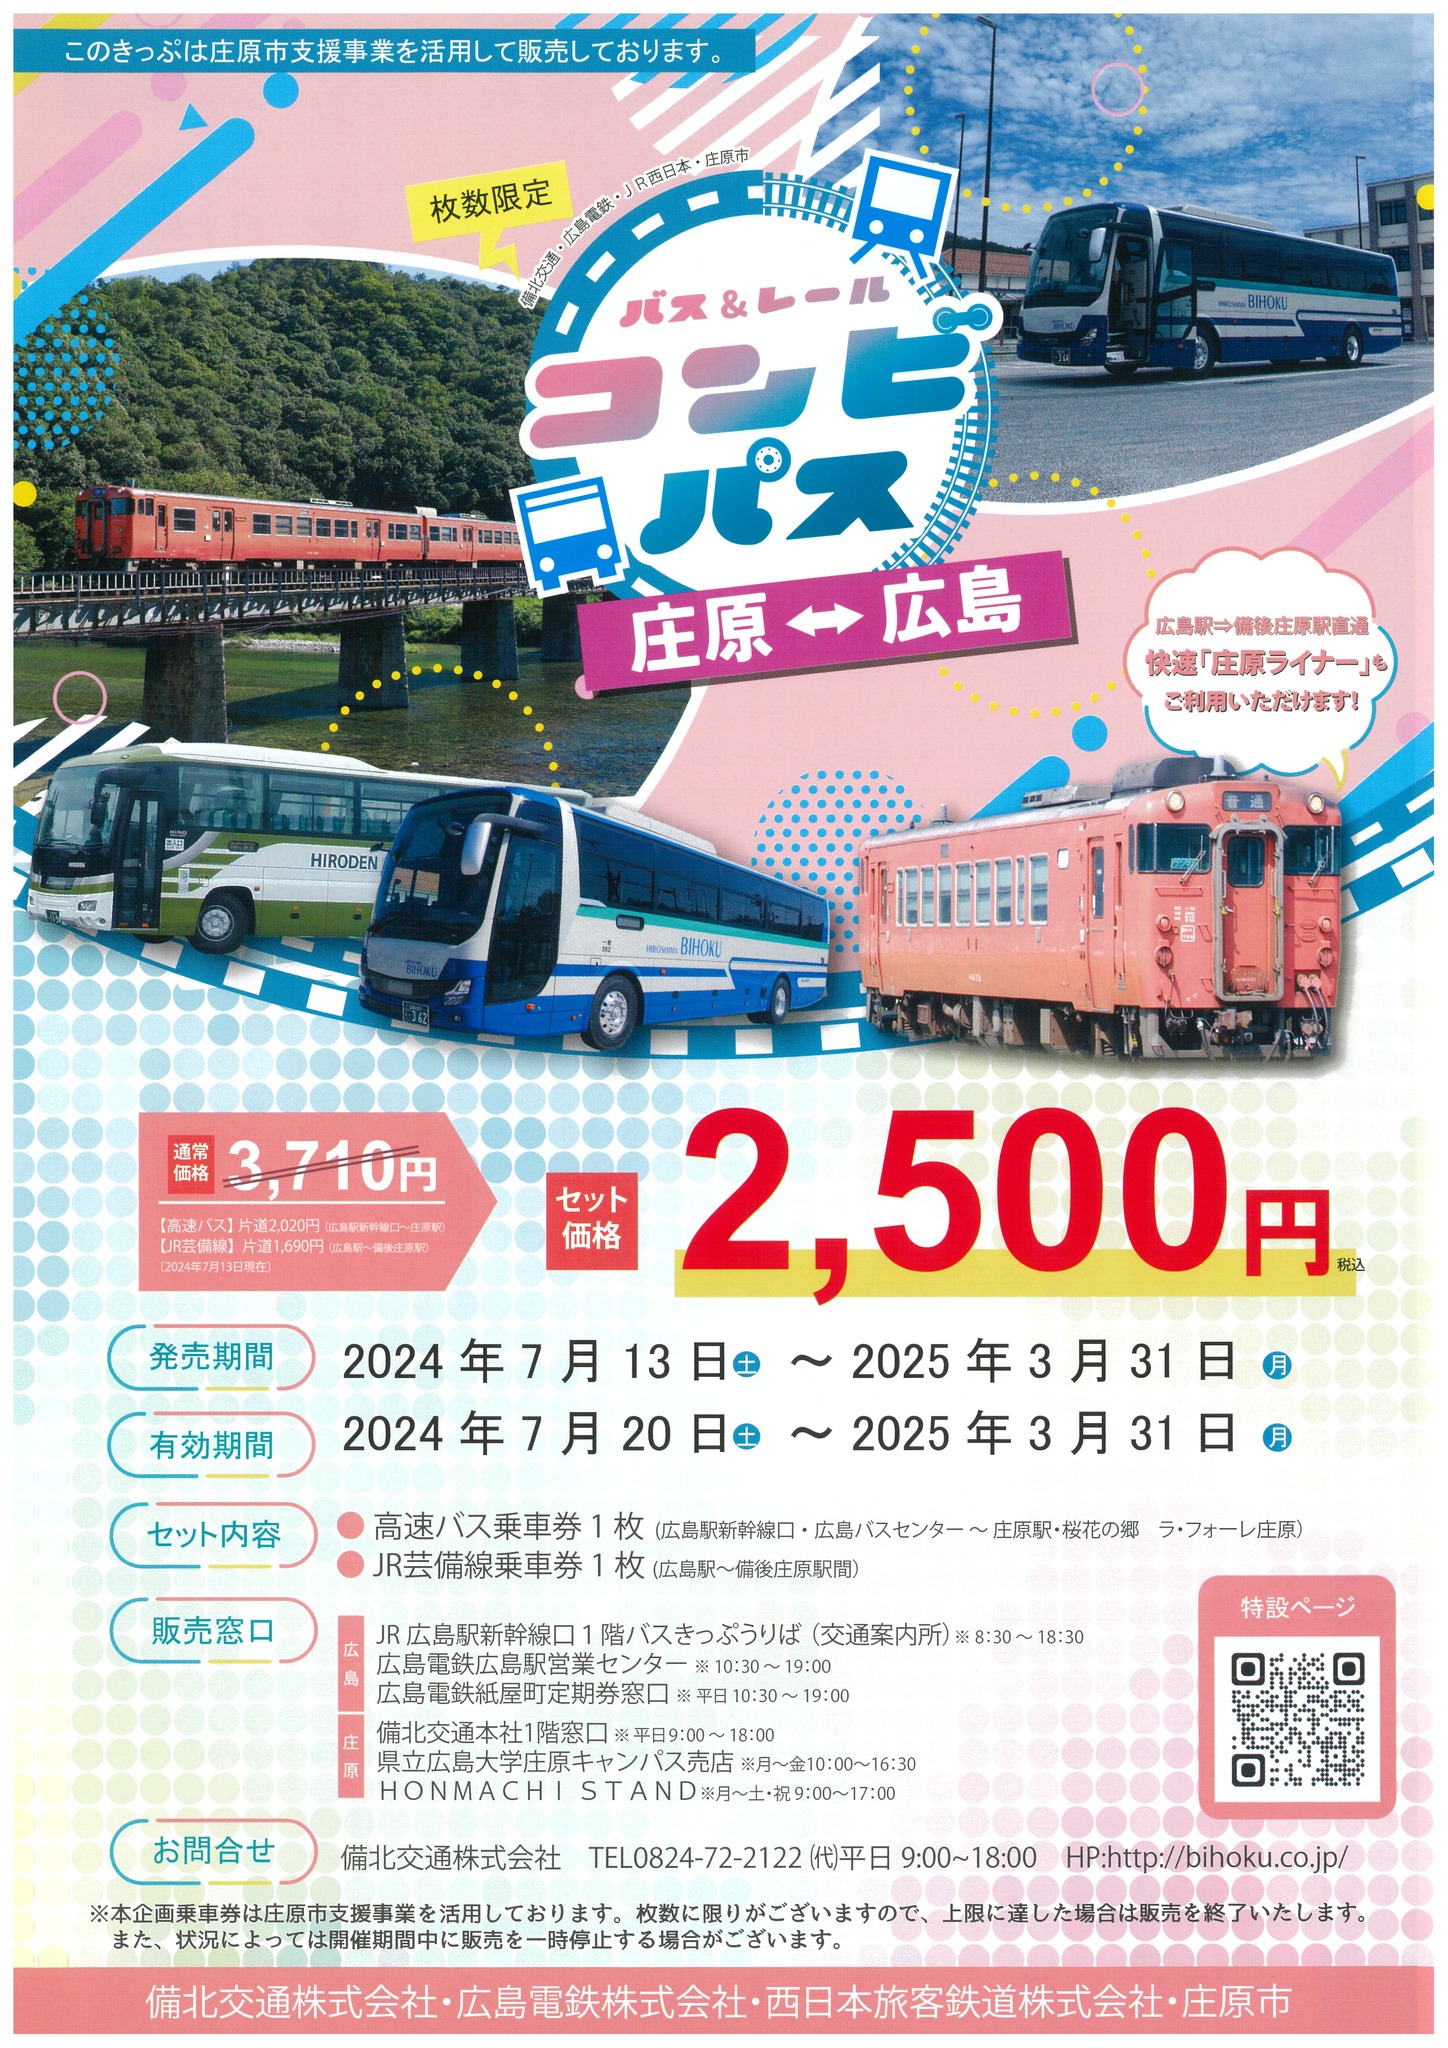 「庄原⇔広島 バス＆レールコンビパス」の発売について